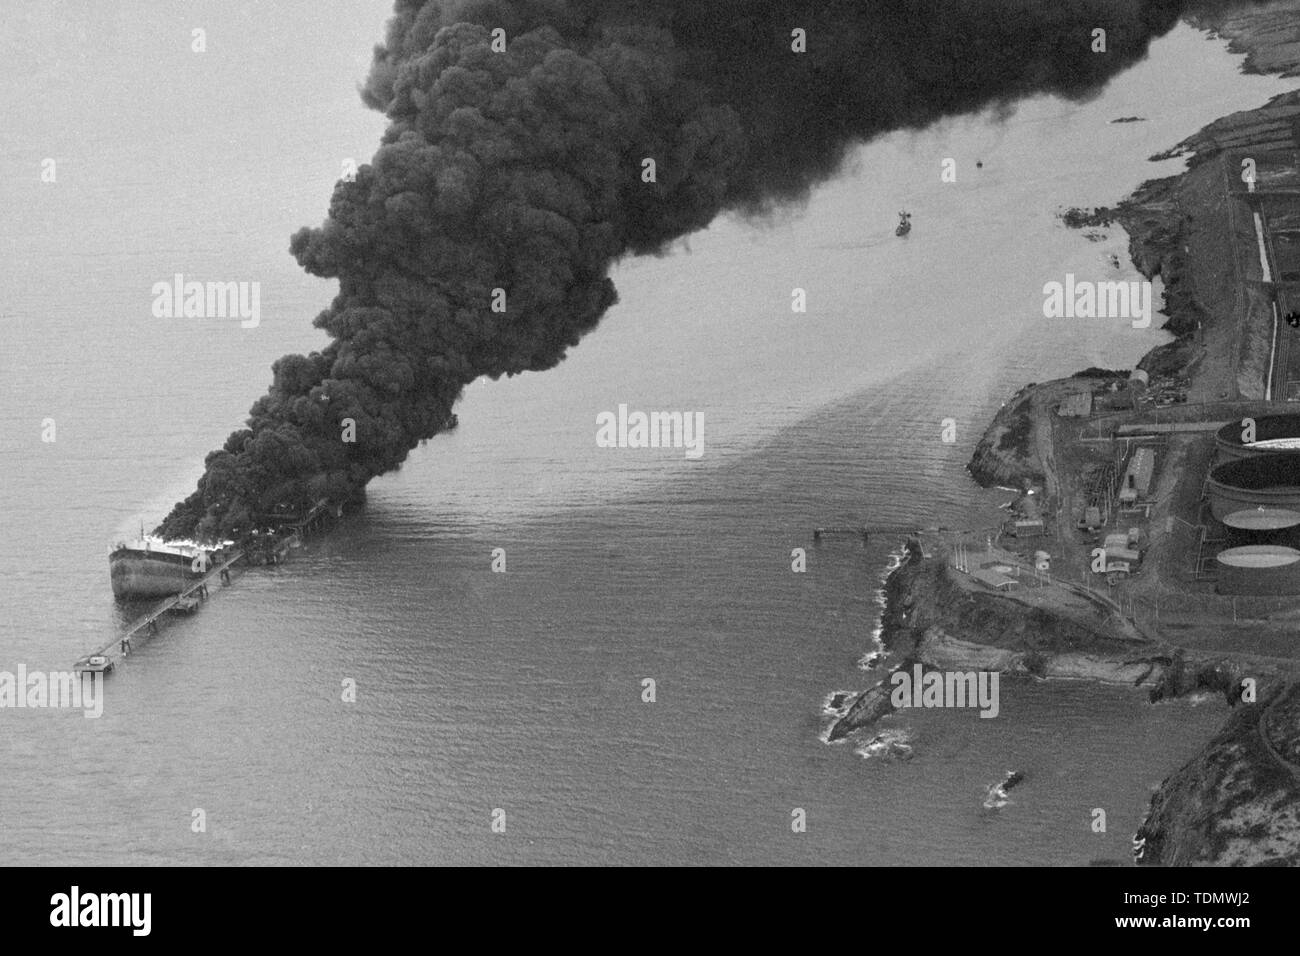 El humo se vierte desde el naufragio sumergido parcialmente del petrolero francés Betelgeuse, que se destrozó el lunes 8 de enero por una serie de explosiones como ella era descargar 120.000 toneladas de crudo en el Golfo terminal petrolera en Bantry Bay, Irlanda. Murieron 50 personas, incluidos 43 de los miembros de la tripulación de los buques cisterna de 60.000 toneladas. Foto de stock